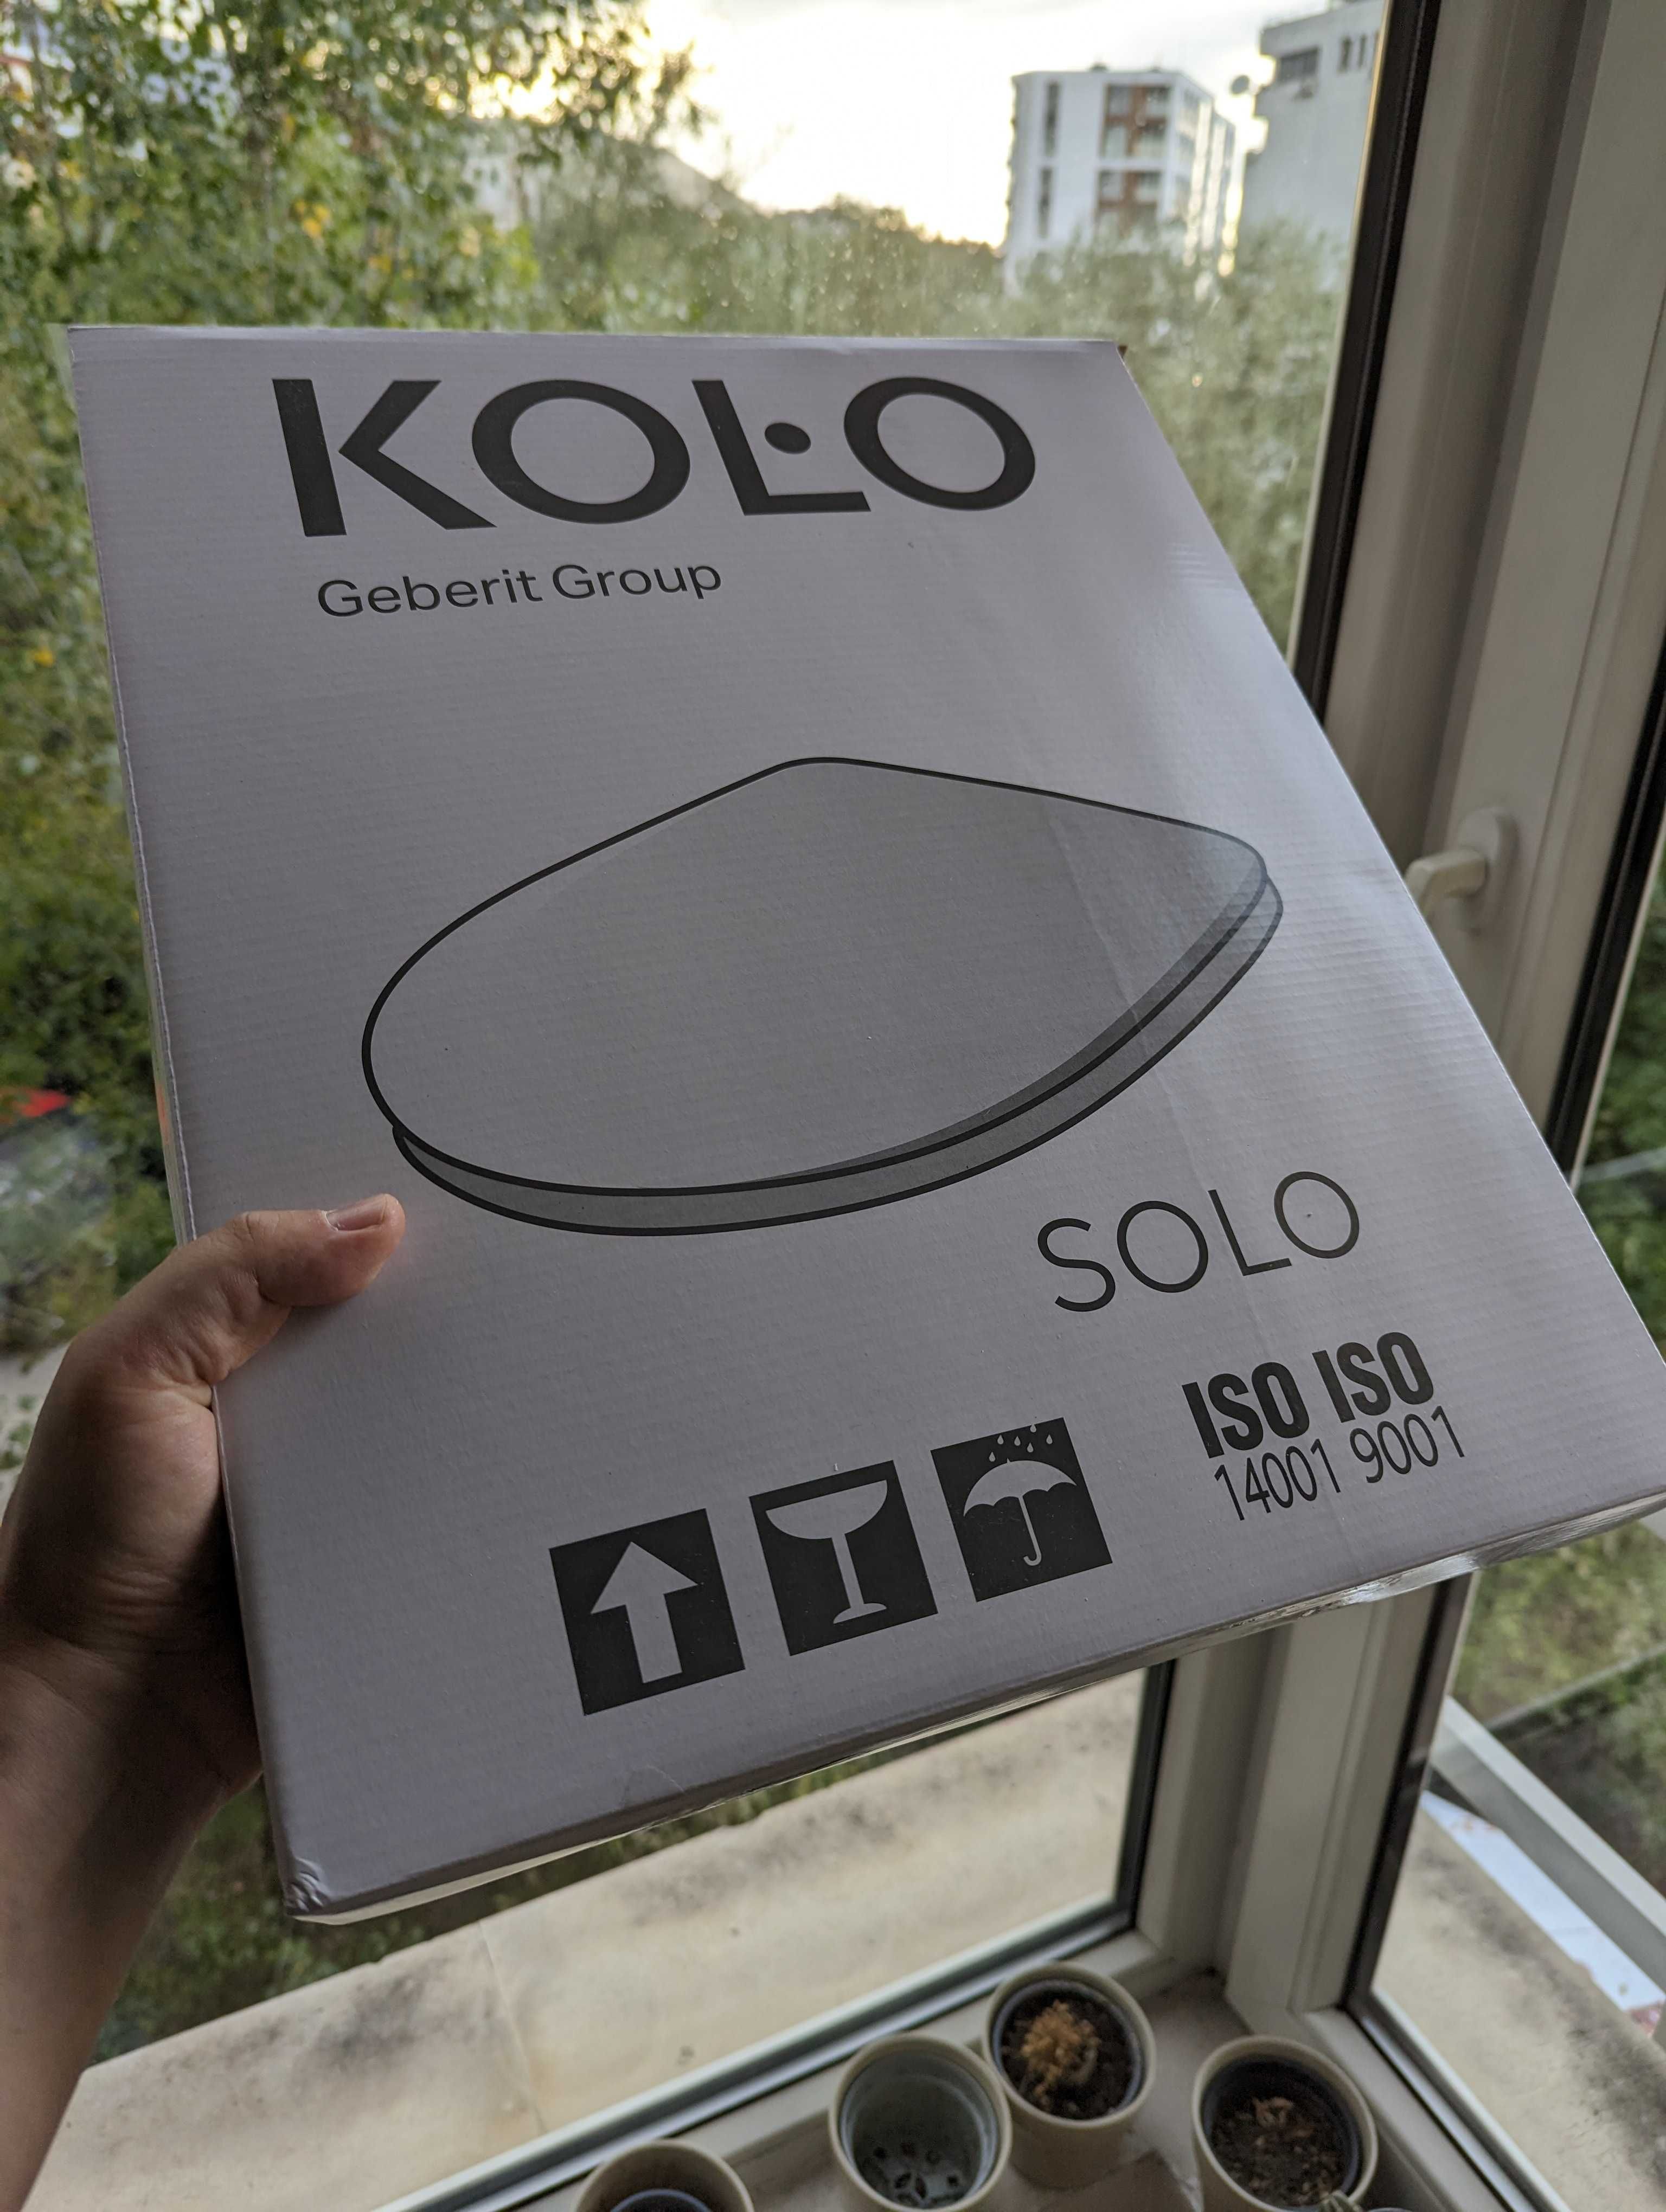 Капак + седалка за моноблок Solo на Kolo - НОВО